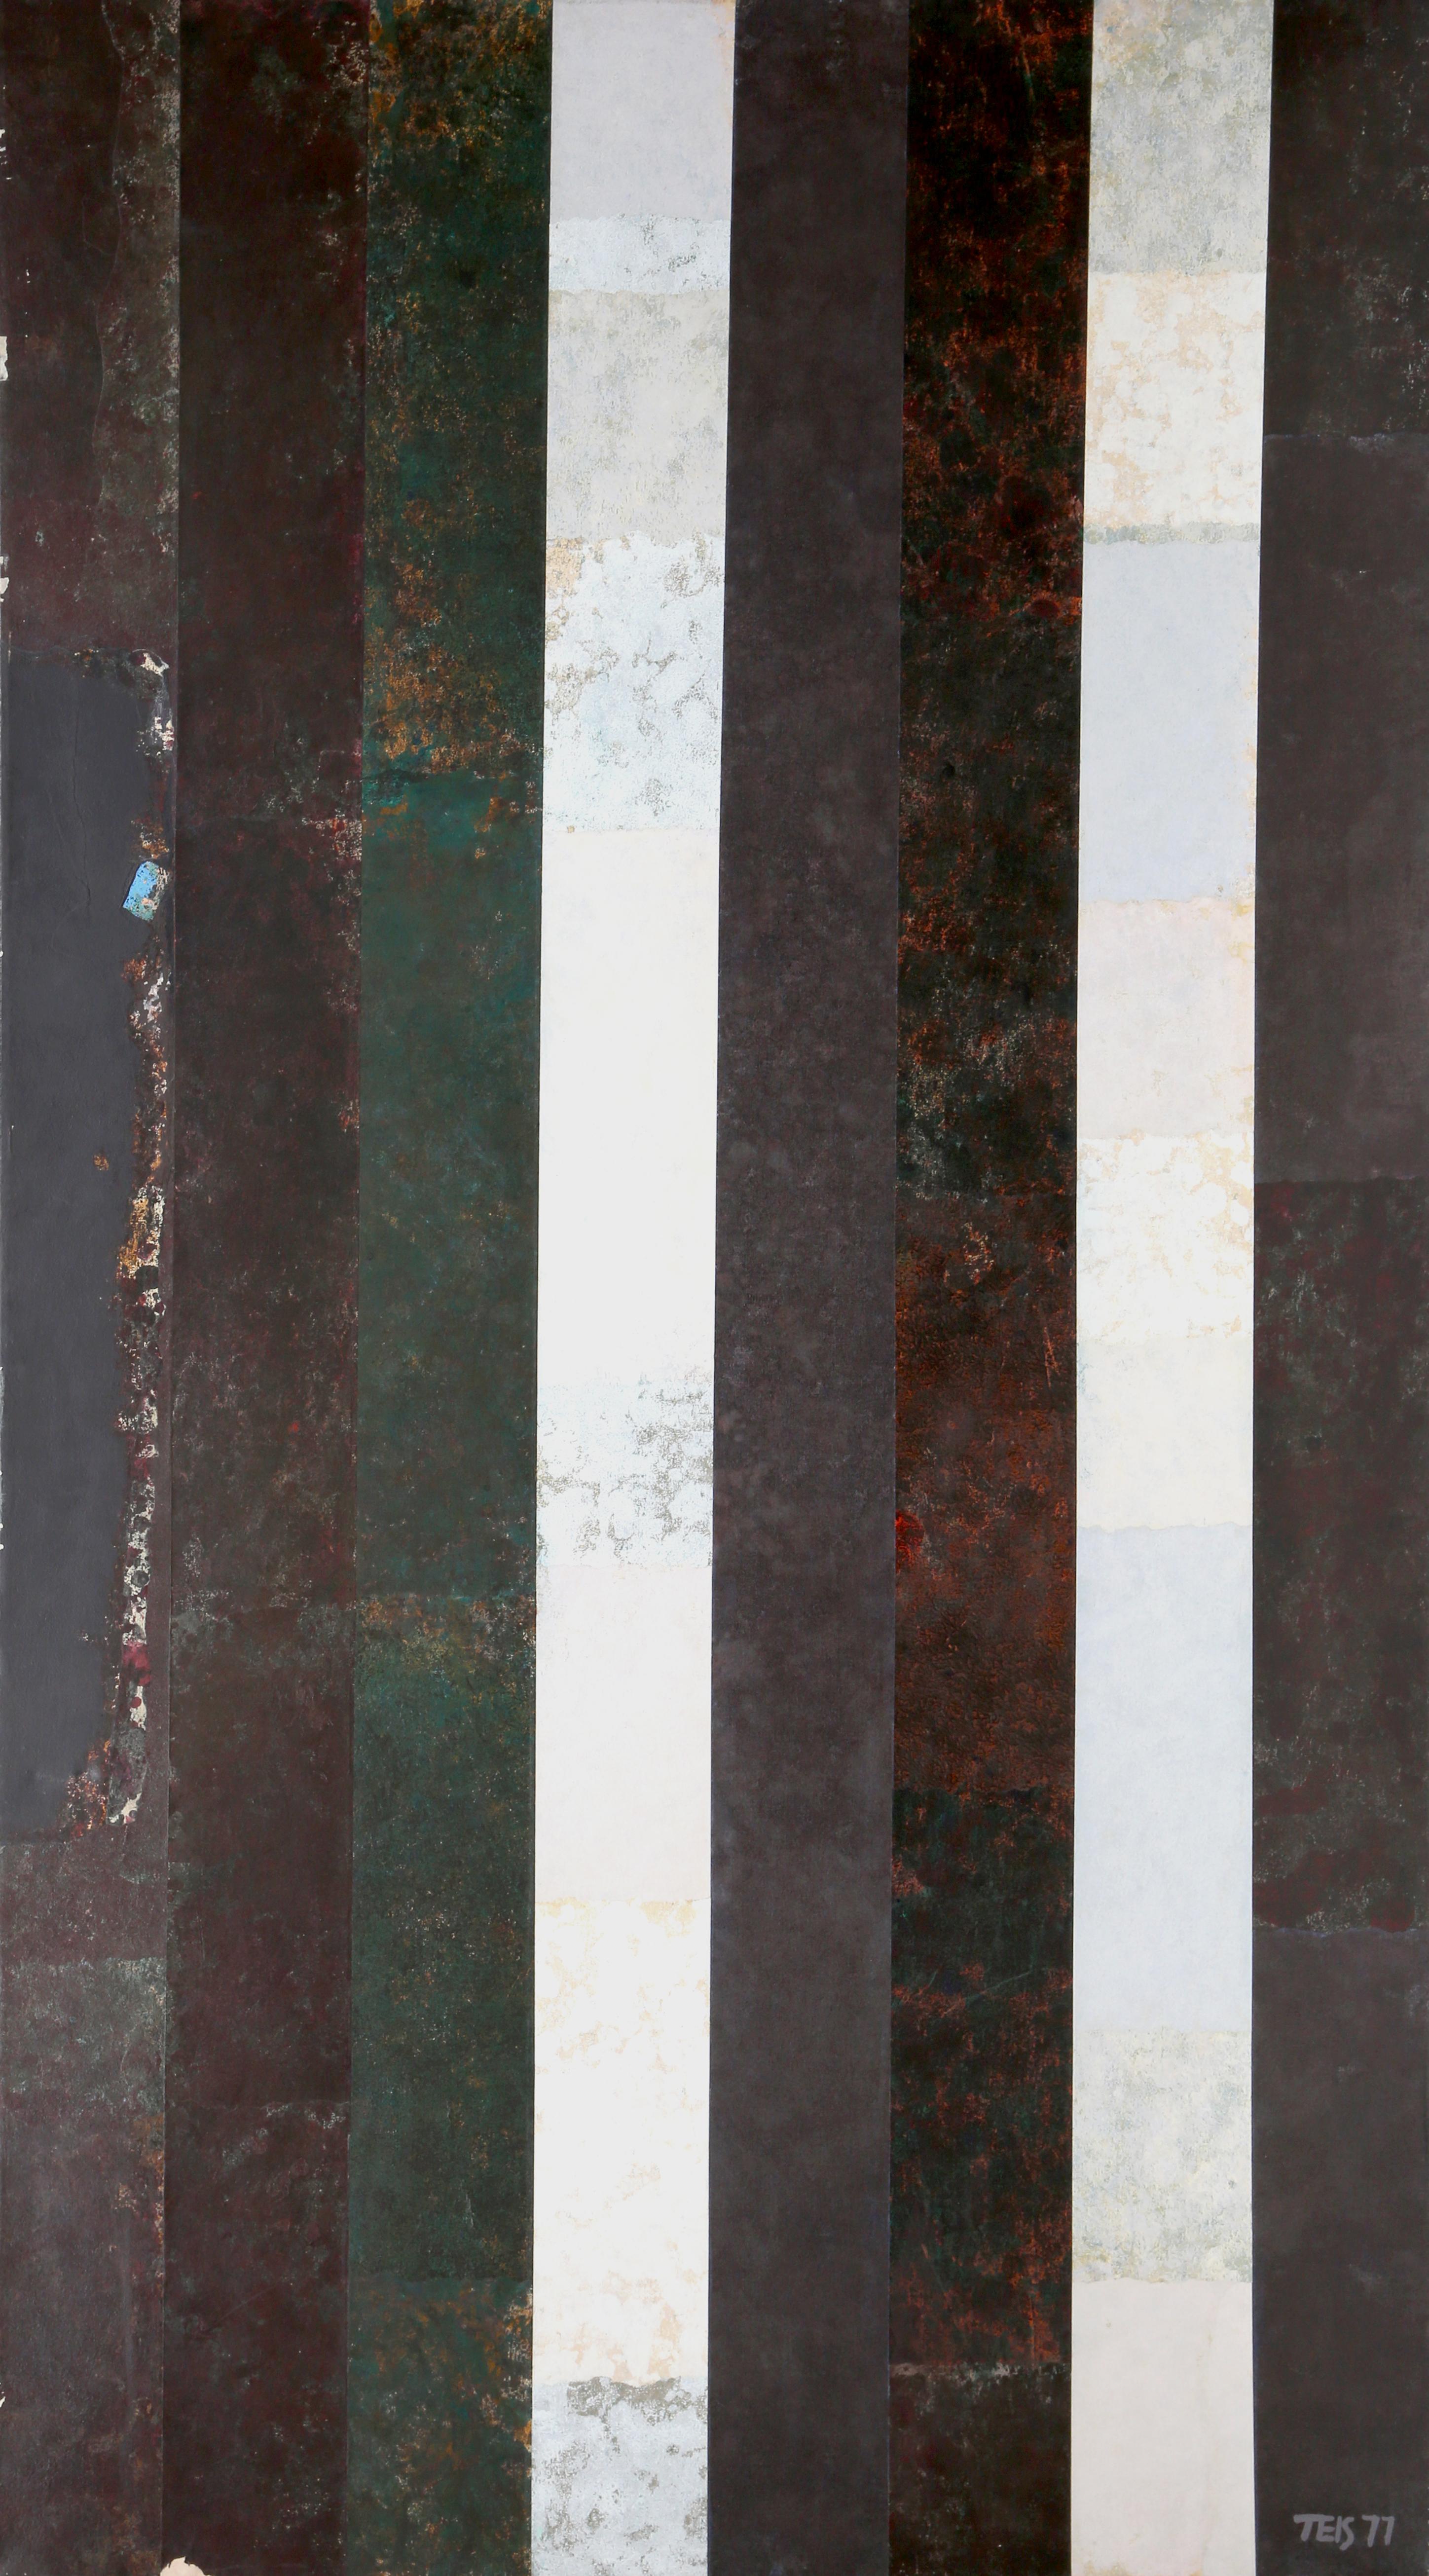 Artiste : Dan Teis, américain (1925 - 2002)
Titre : Rayures noires et blanches métallisées
Année : 1977
Moyen : Acrylique sur toile, signé à droite.
Taille : 182,88 x 101,6 cm (72 x 40 in.) (182,88 x 101,6 cm)